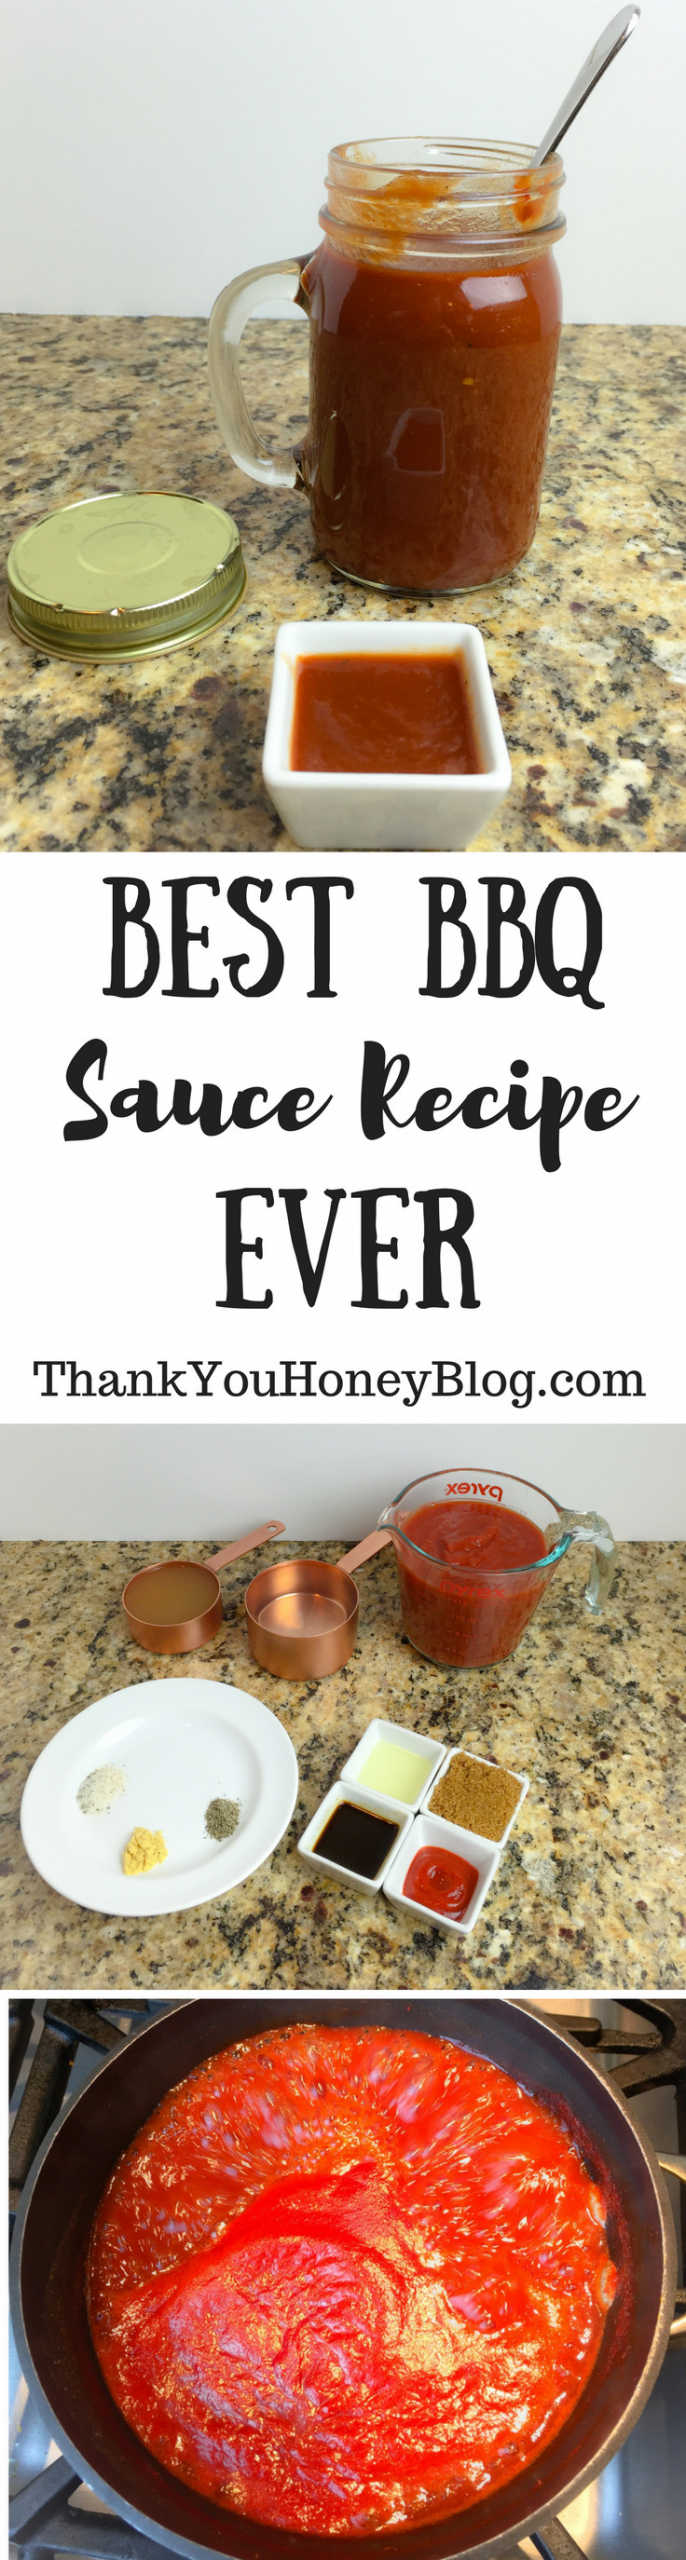 Best Bbq Sauce Recipe
 Best BBQ Sauce Recipe Ever